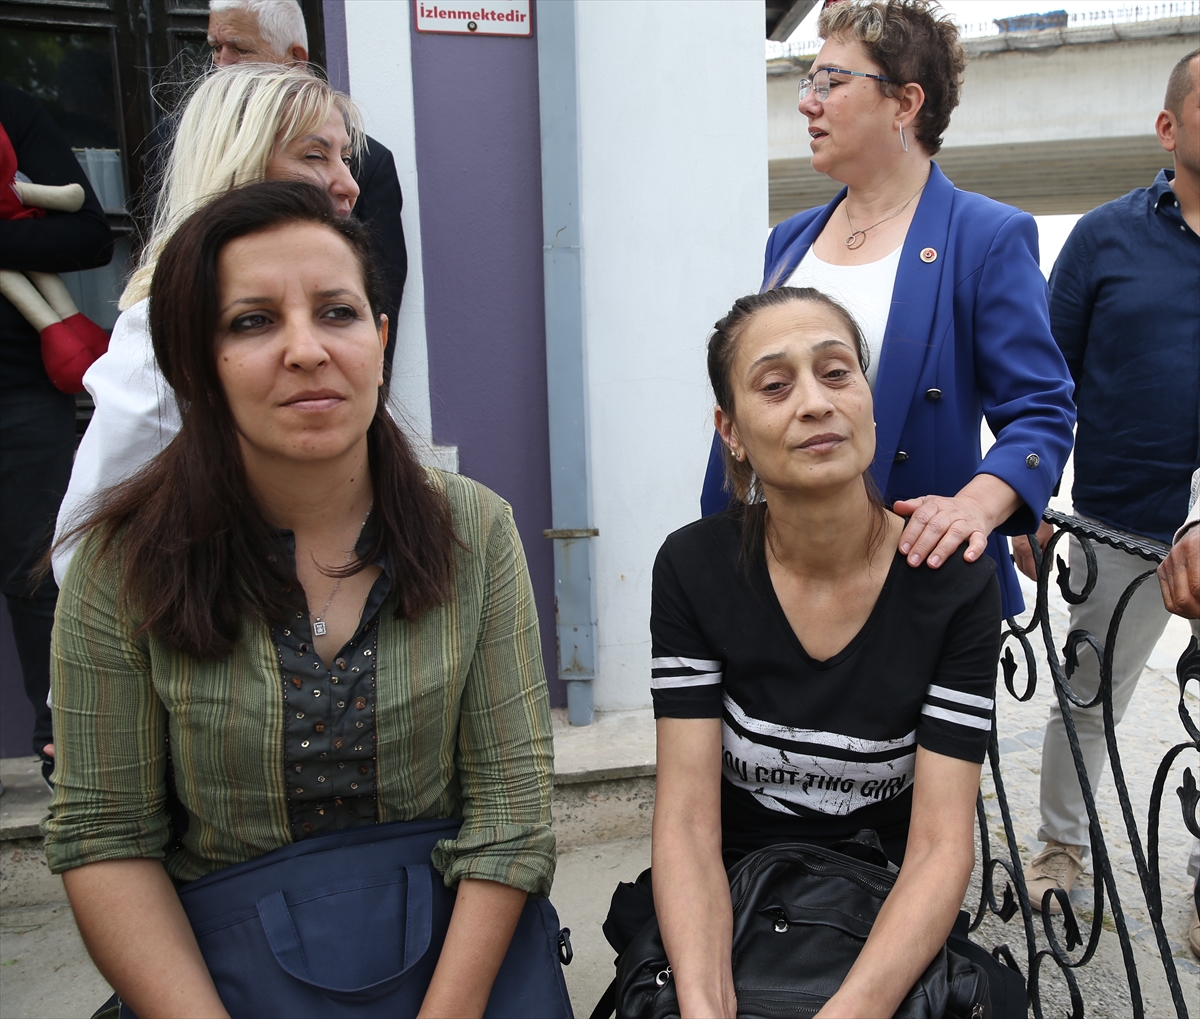 Edirne'de yaşanan kadın cinayetine tepki